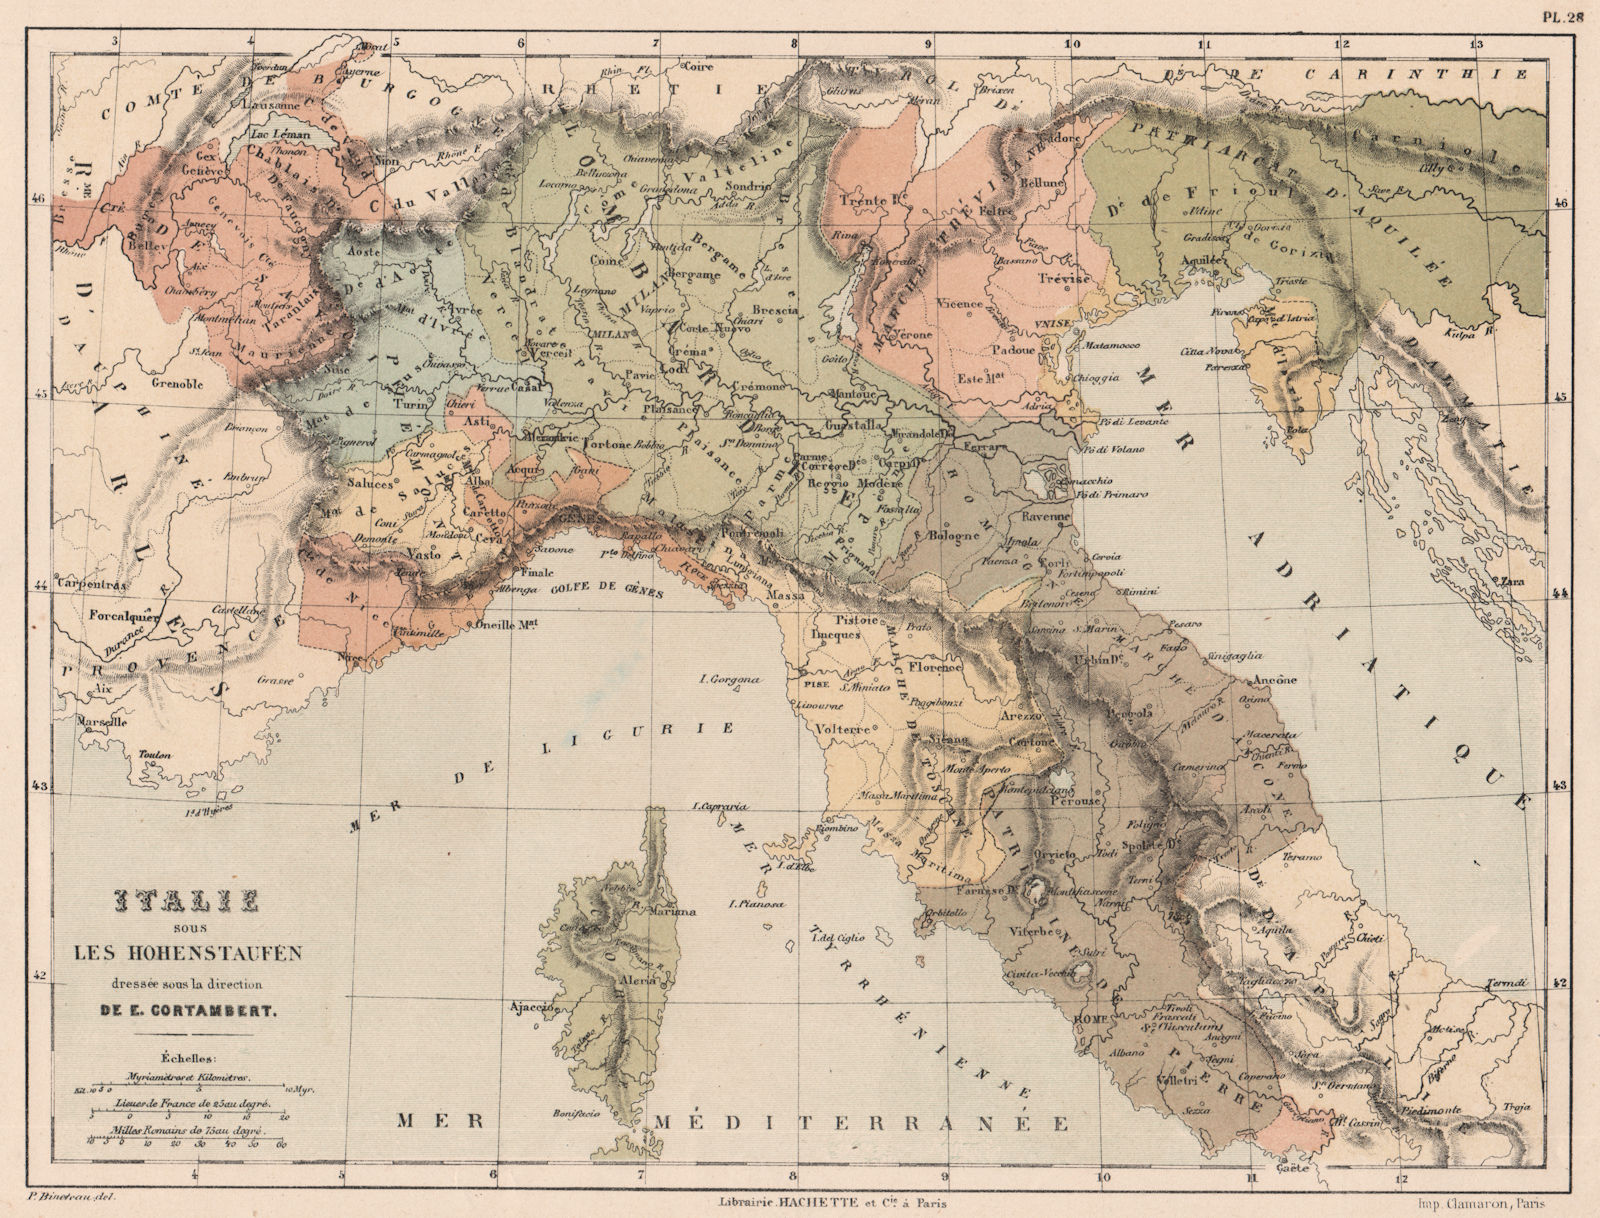 HOHENSTAUFEN ITALY. Northern Italy. 12th century. Swabia. CORTAMBERT 1880 map